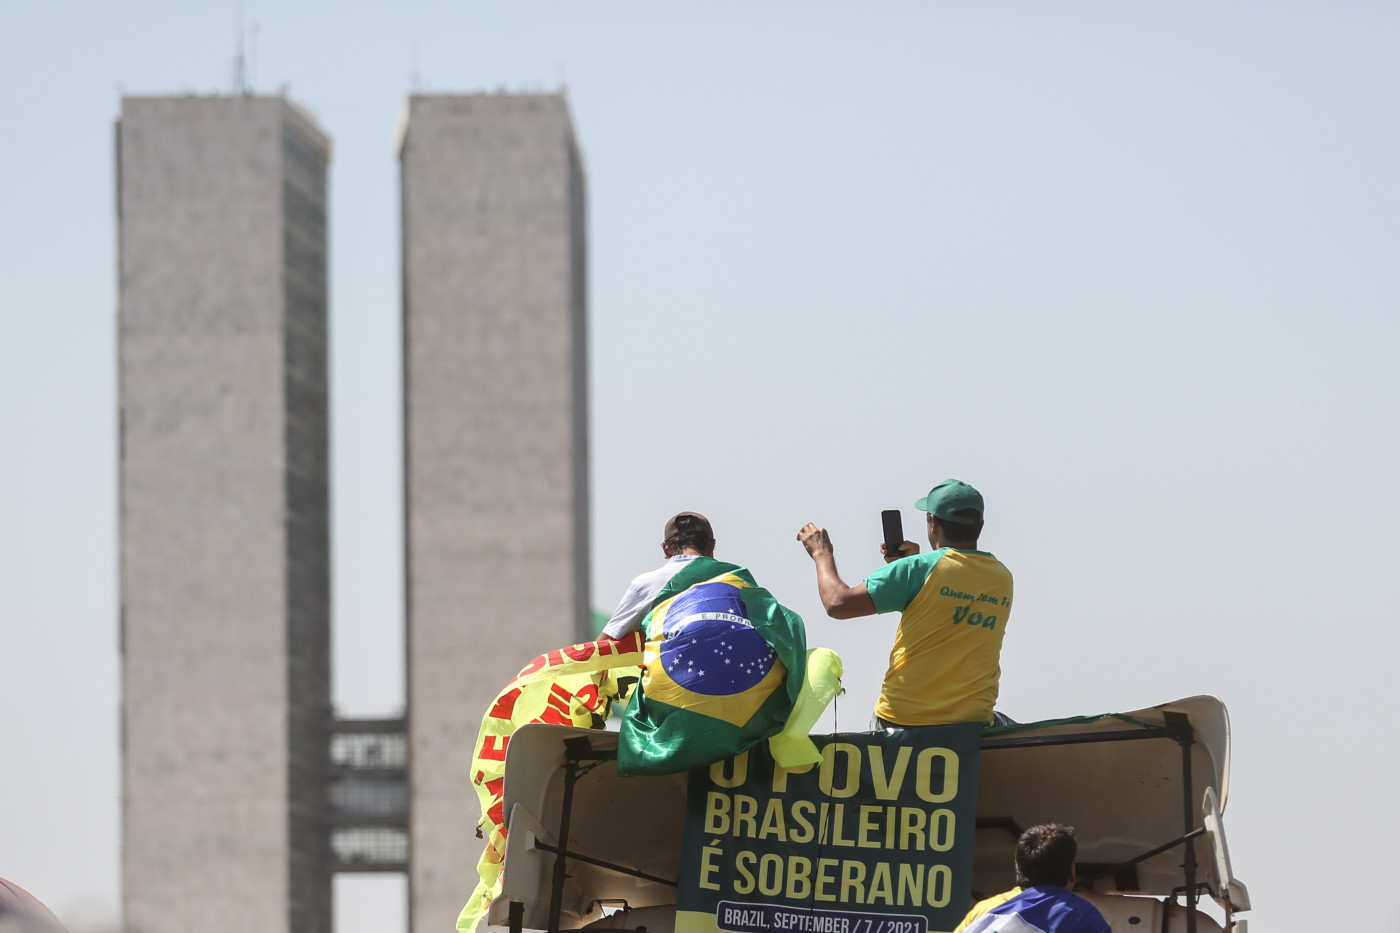 Vista geral da Esplanada dos Ministérios, em Brasília, durante ato de apoiadores do governo